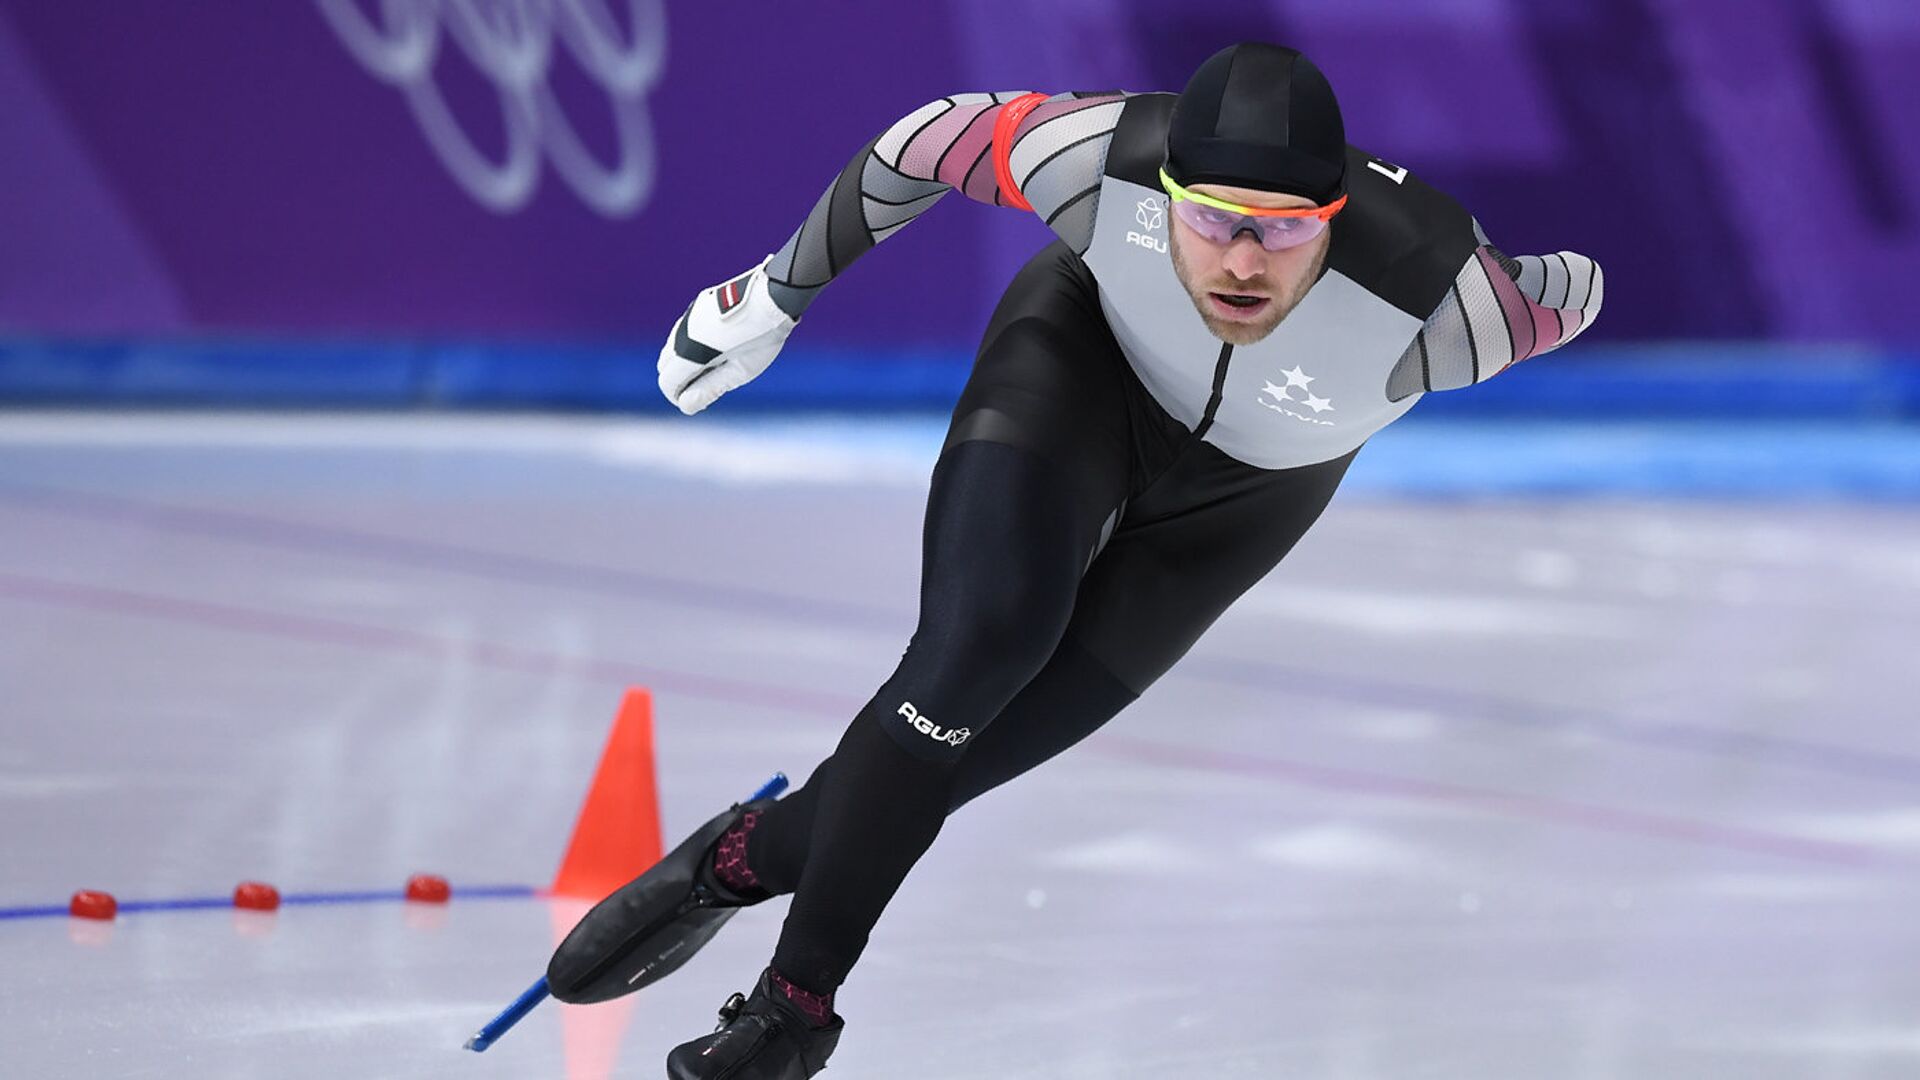 Конькобежец Харальдс Силовс на XXIII зимних Олимпийских играх в Пхенчхане - Sputnik Латвия, 1920, 20.02.2022